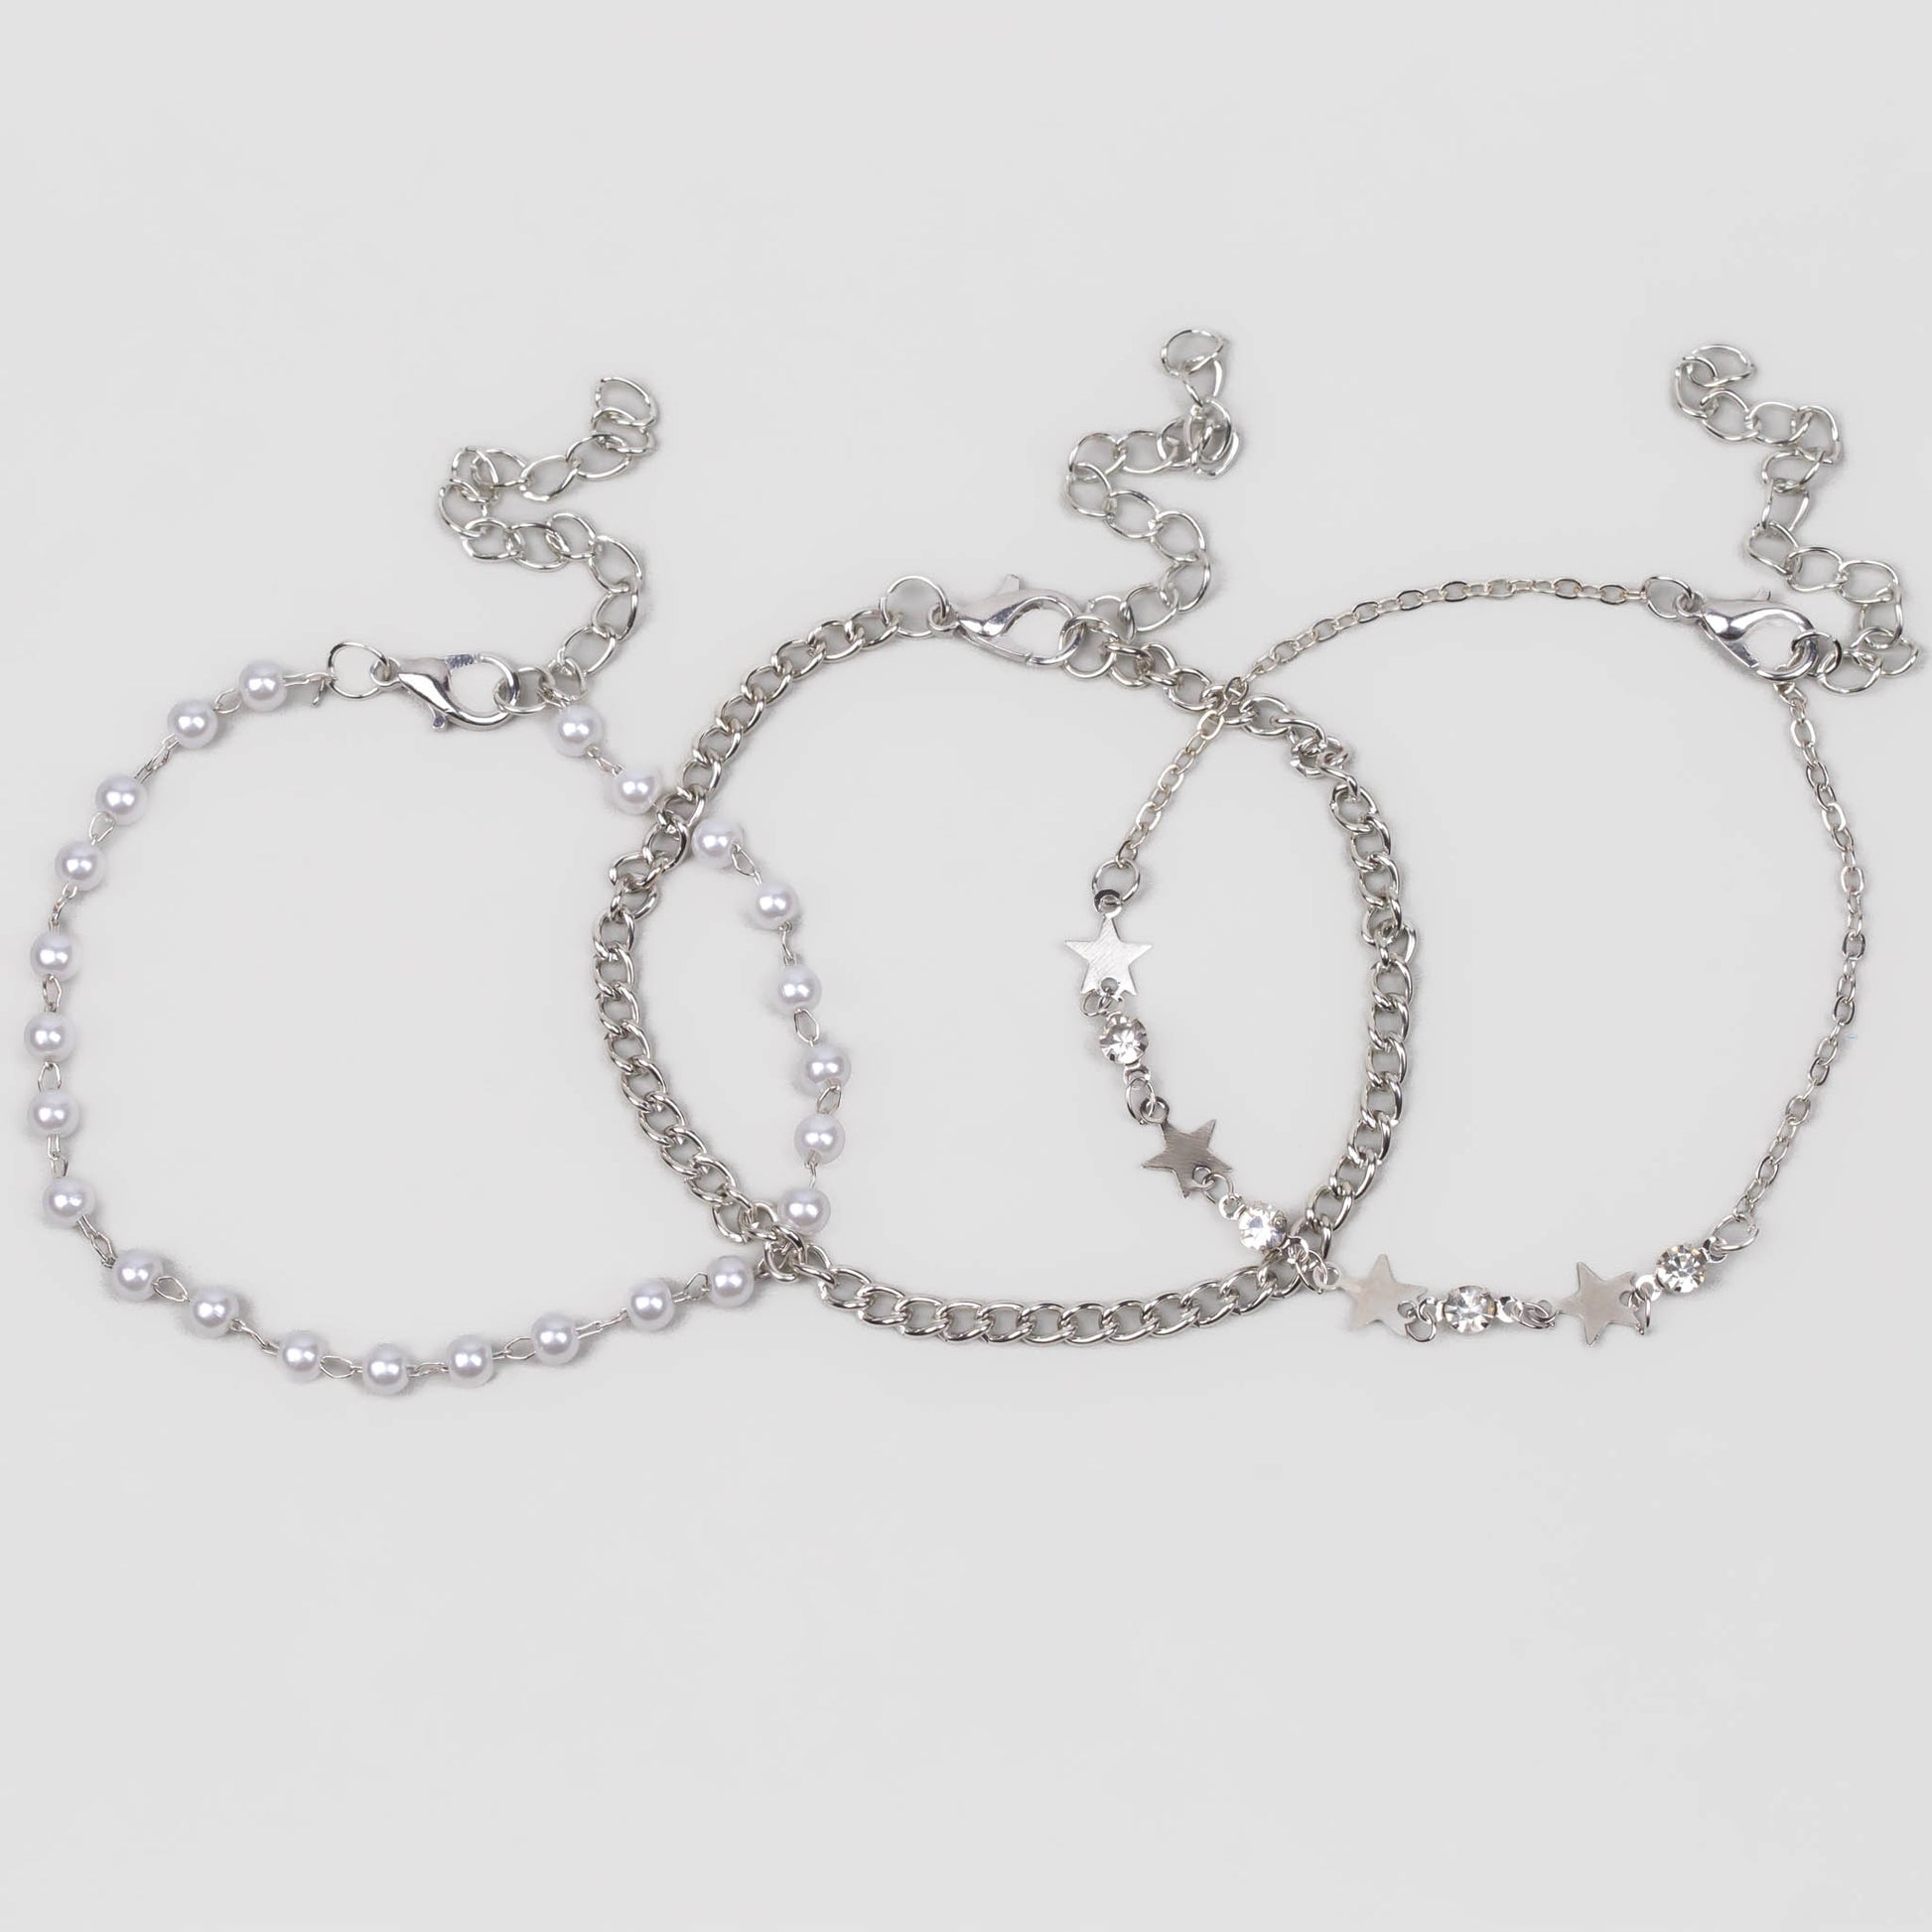 Brățări reglabile cu lanț, biluțe și stele, set 3 buc - Argintiu